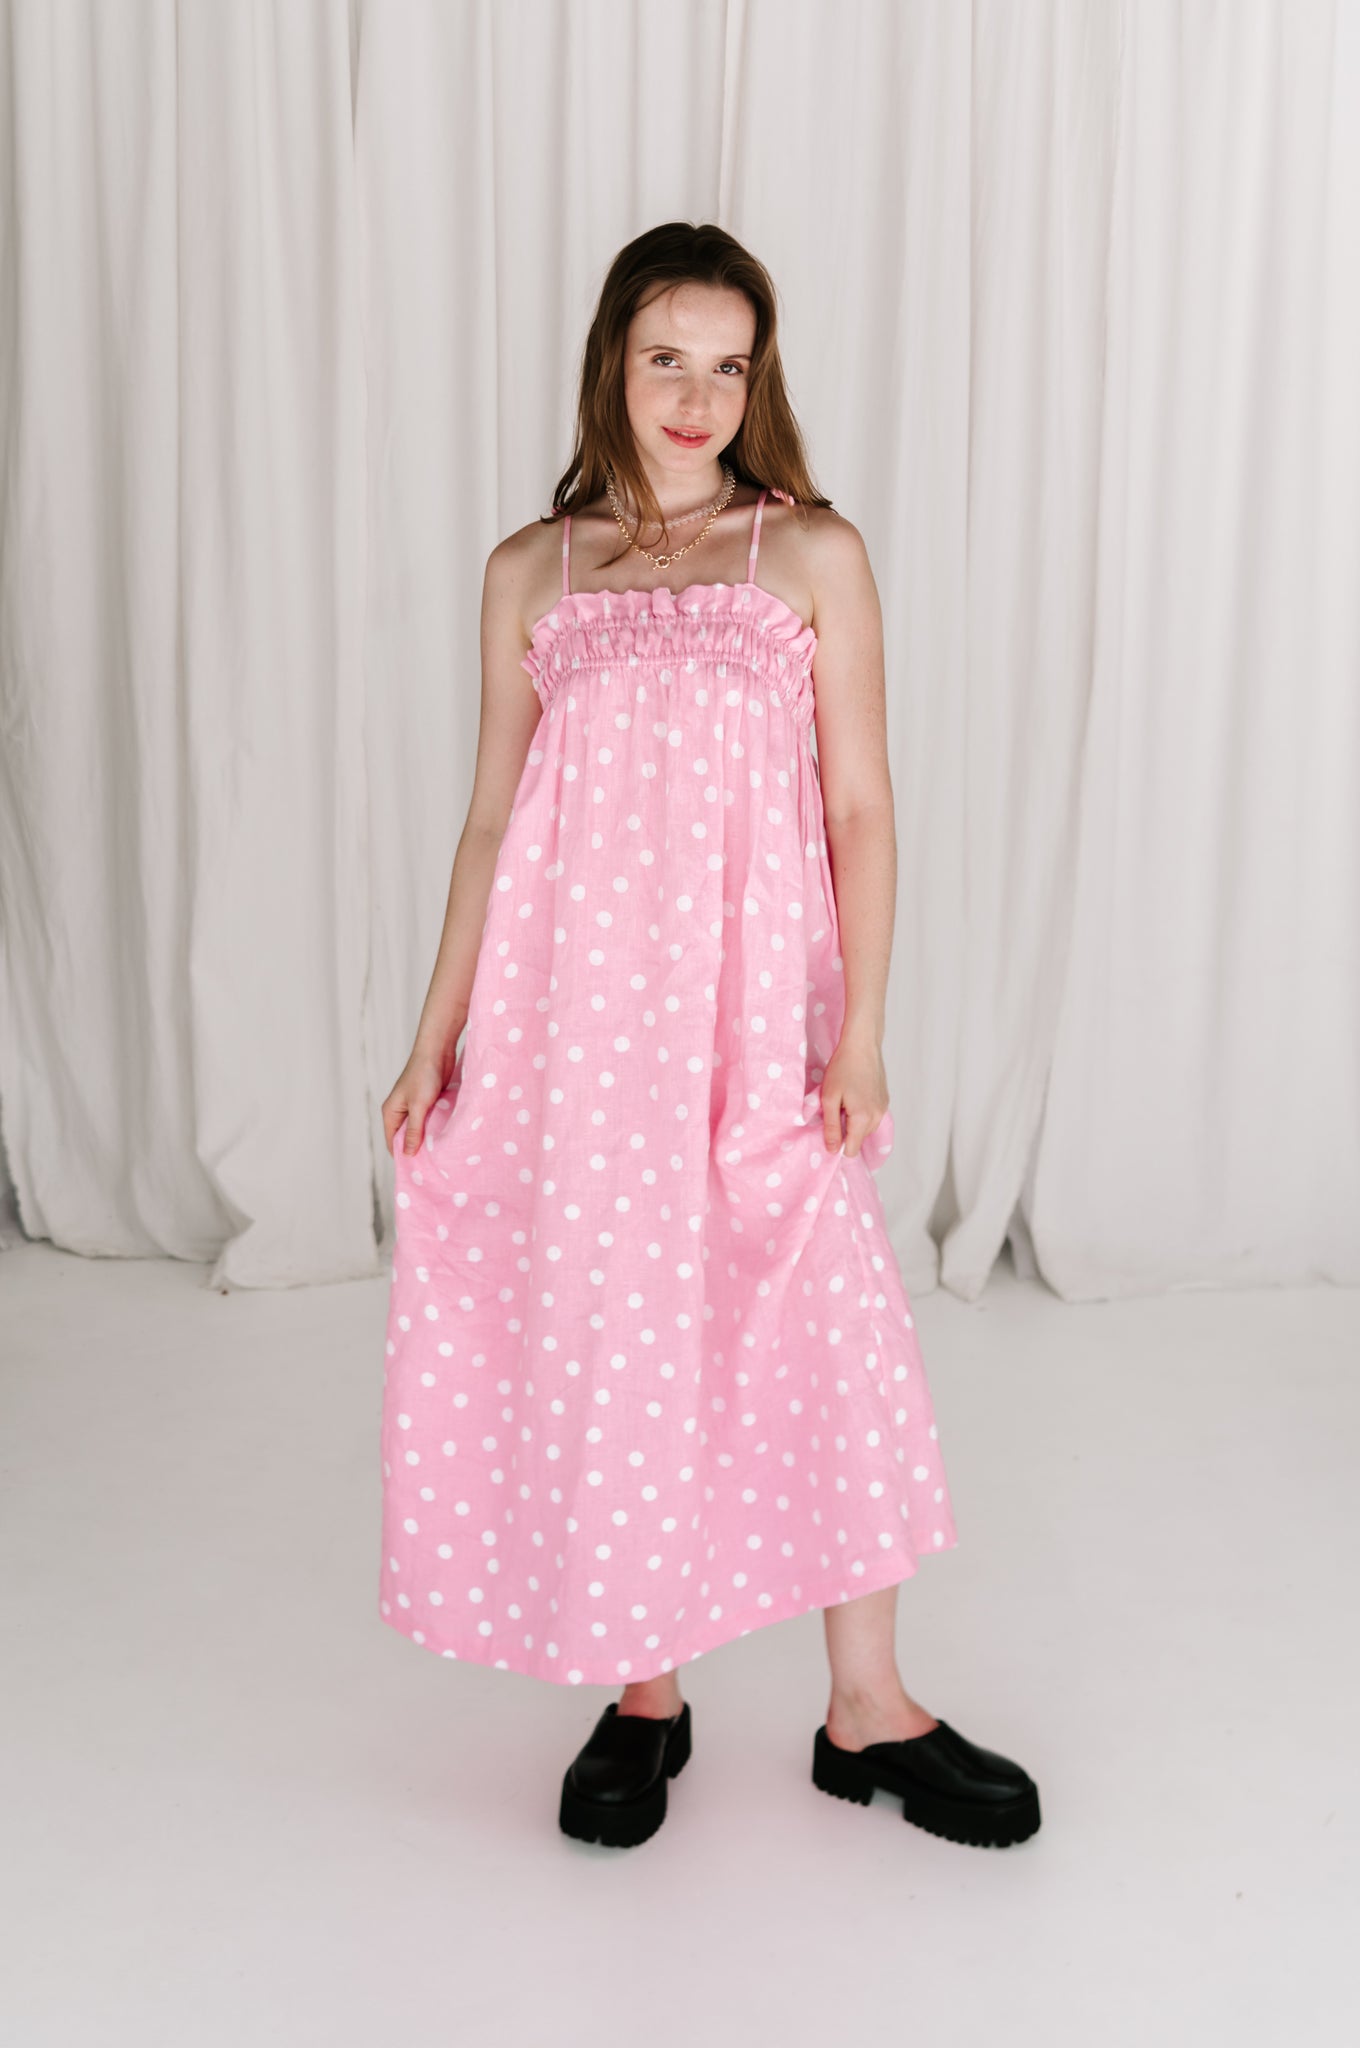 Dottie Dress 'polkadot' | Candy Pink + White